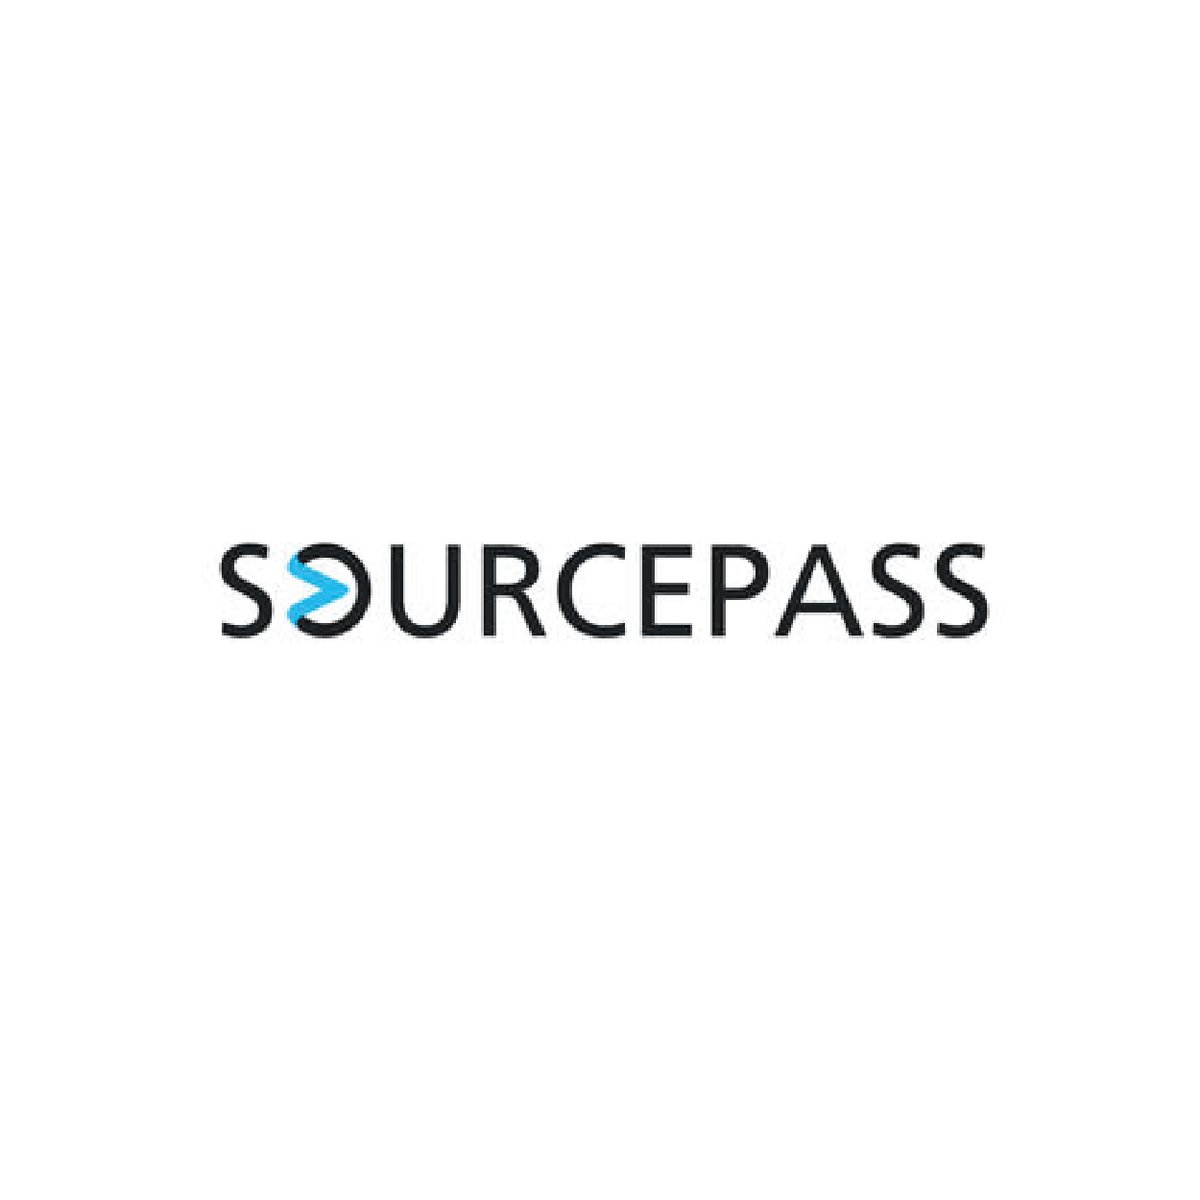 Sourcepass-01